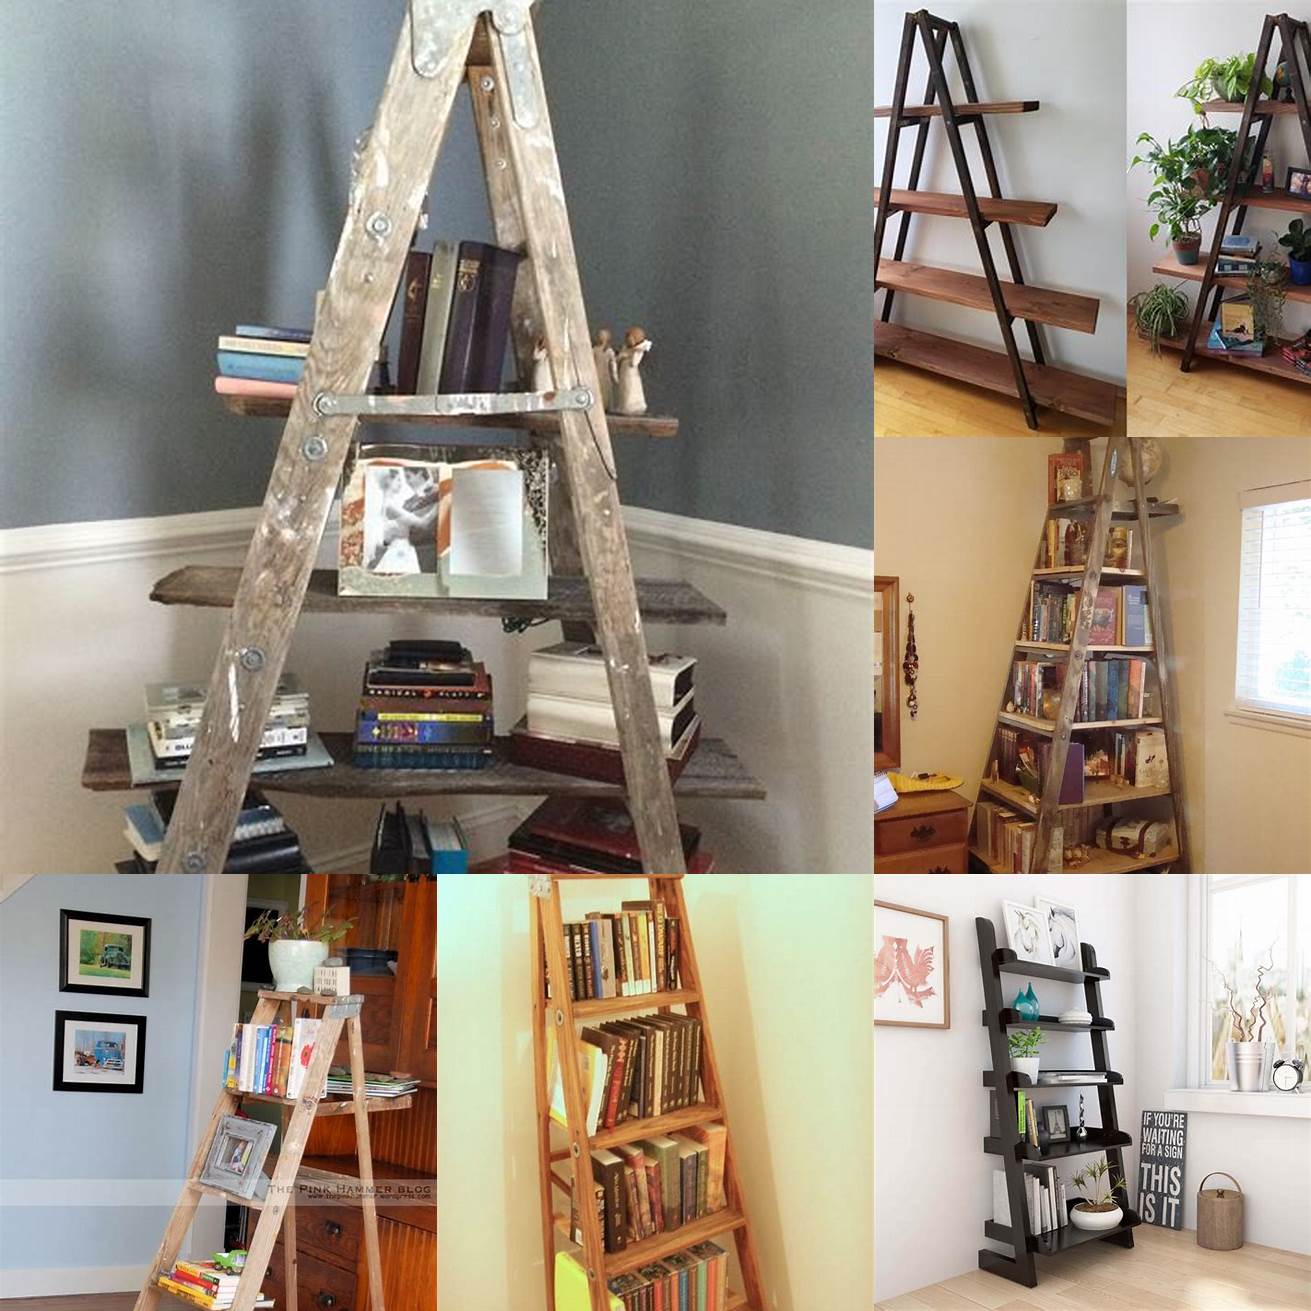 Old ladder bookshelf